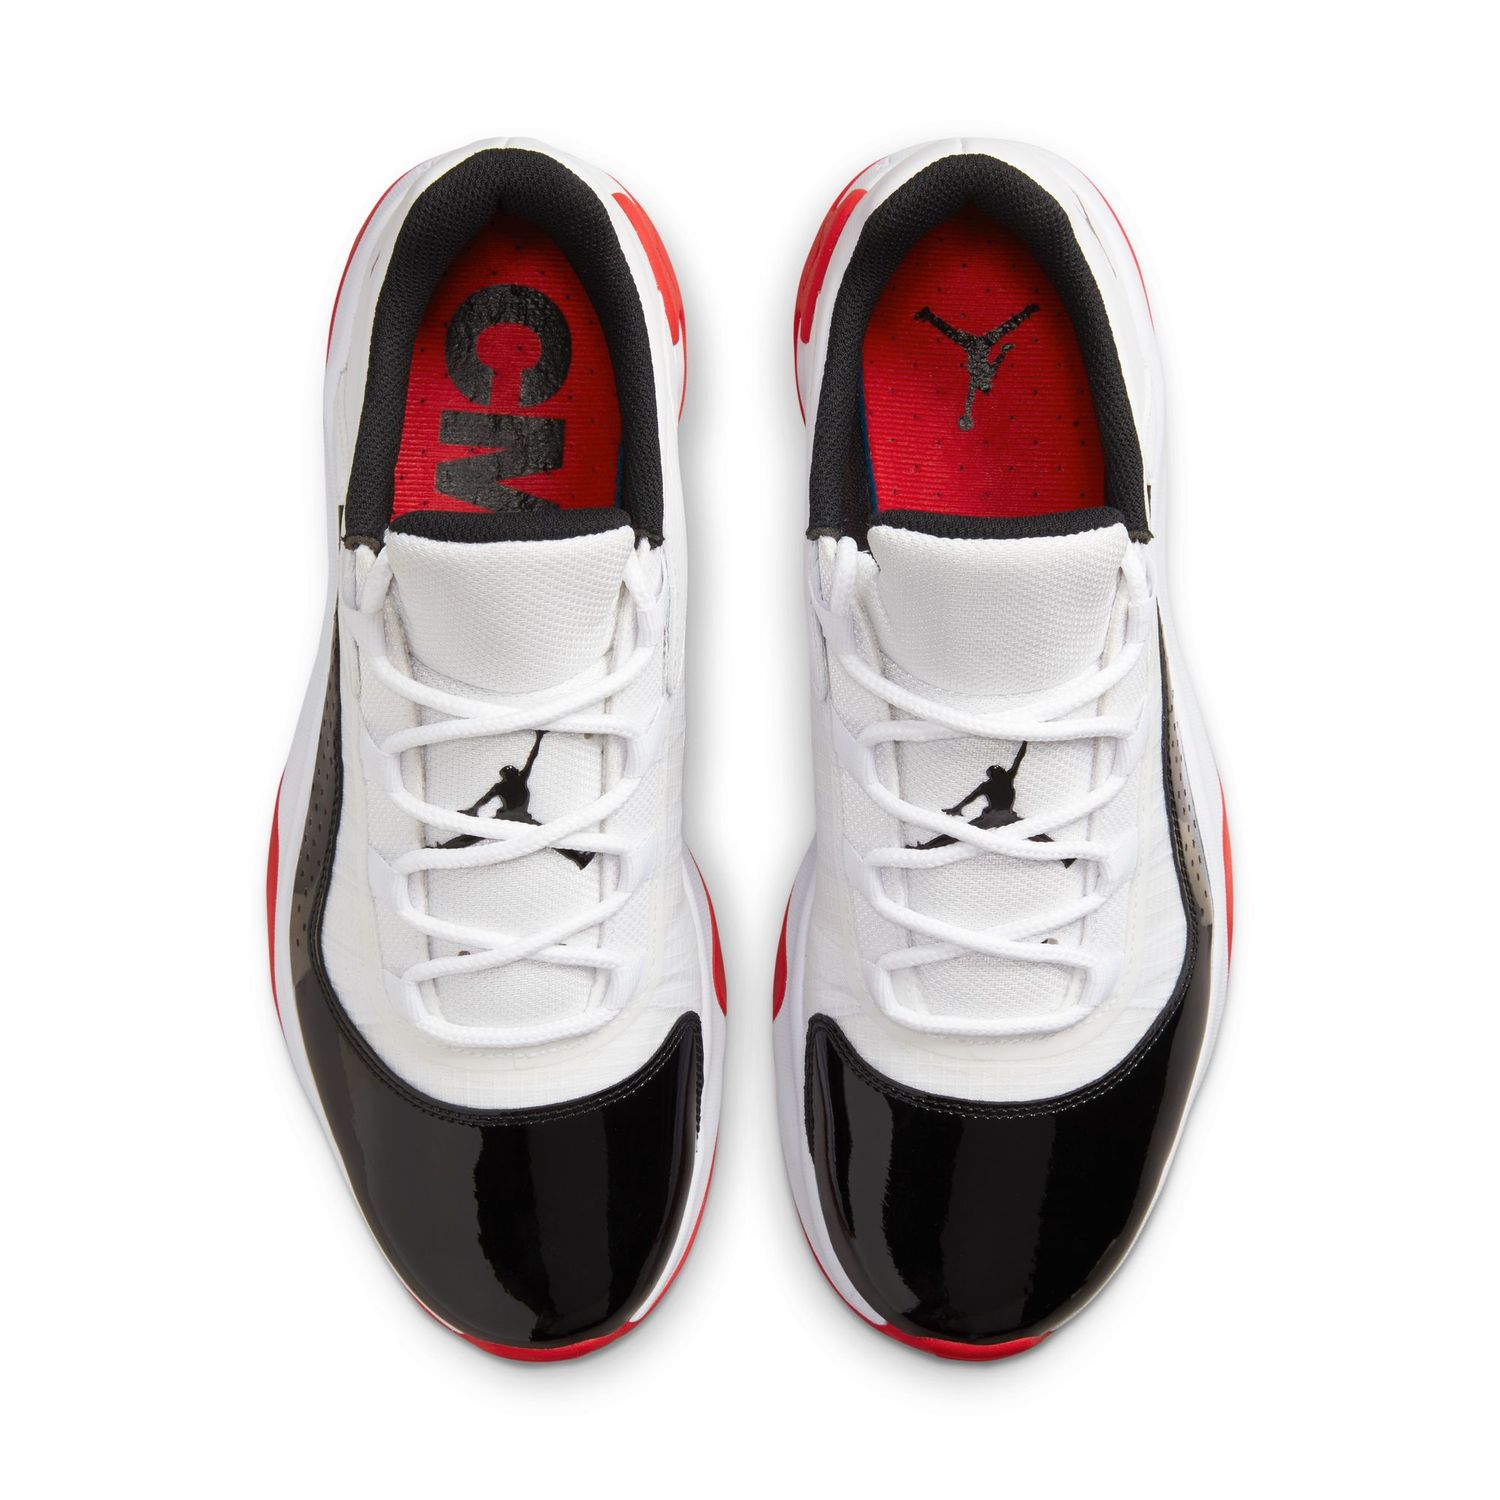 Air Jordan 11 CMFT Low Herren Sneaker